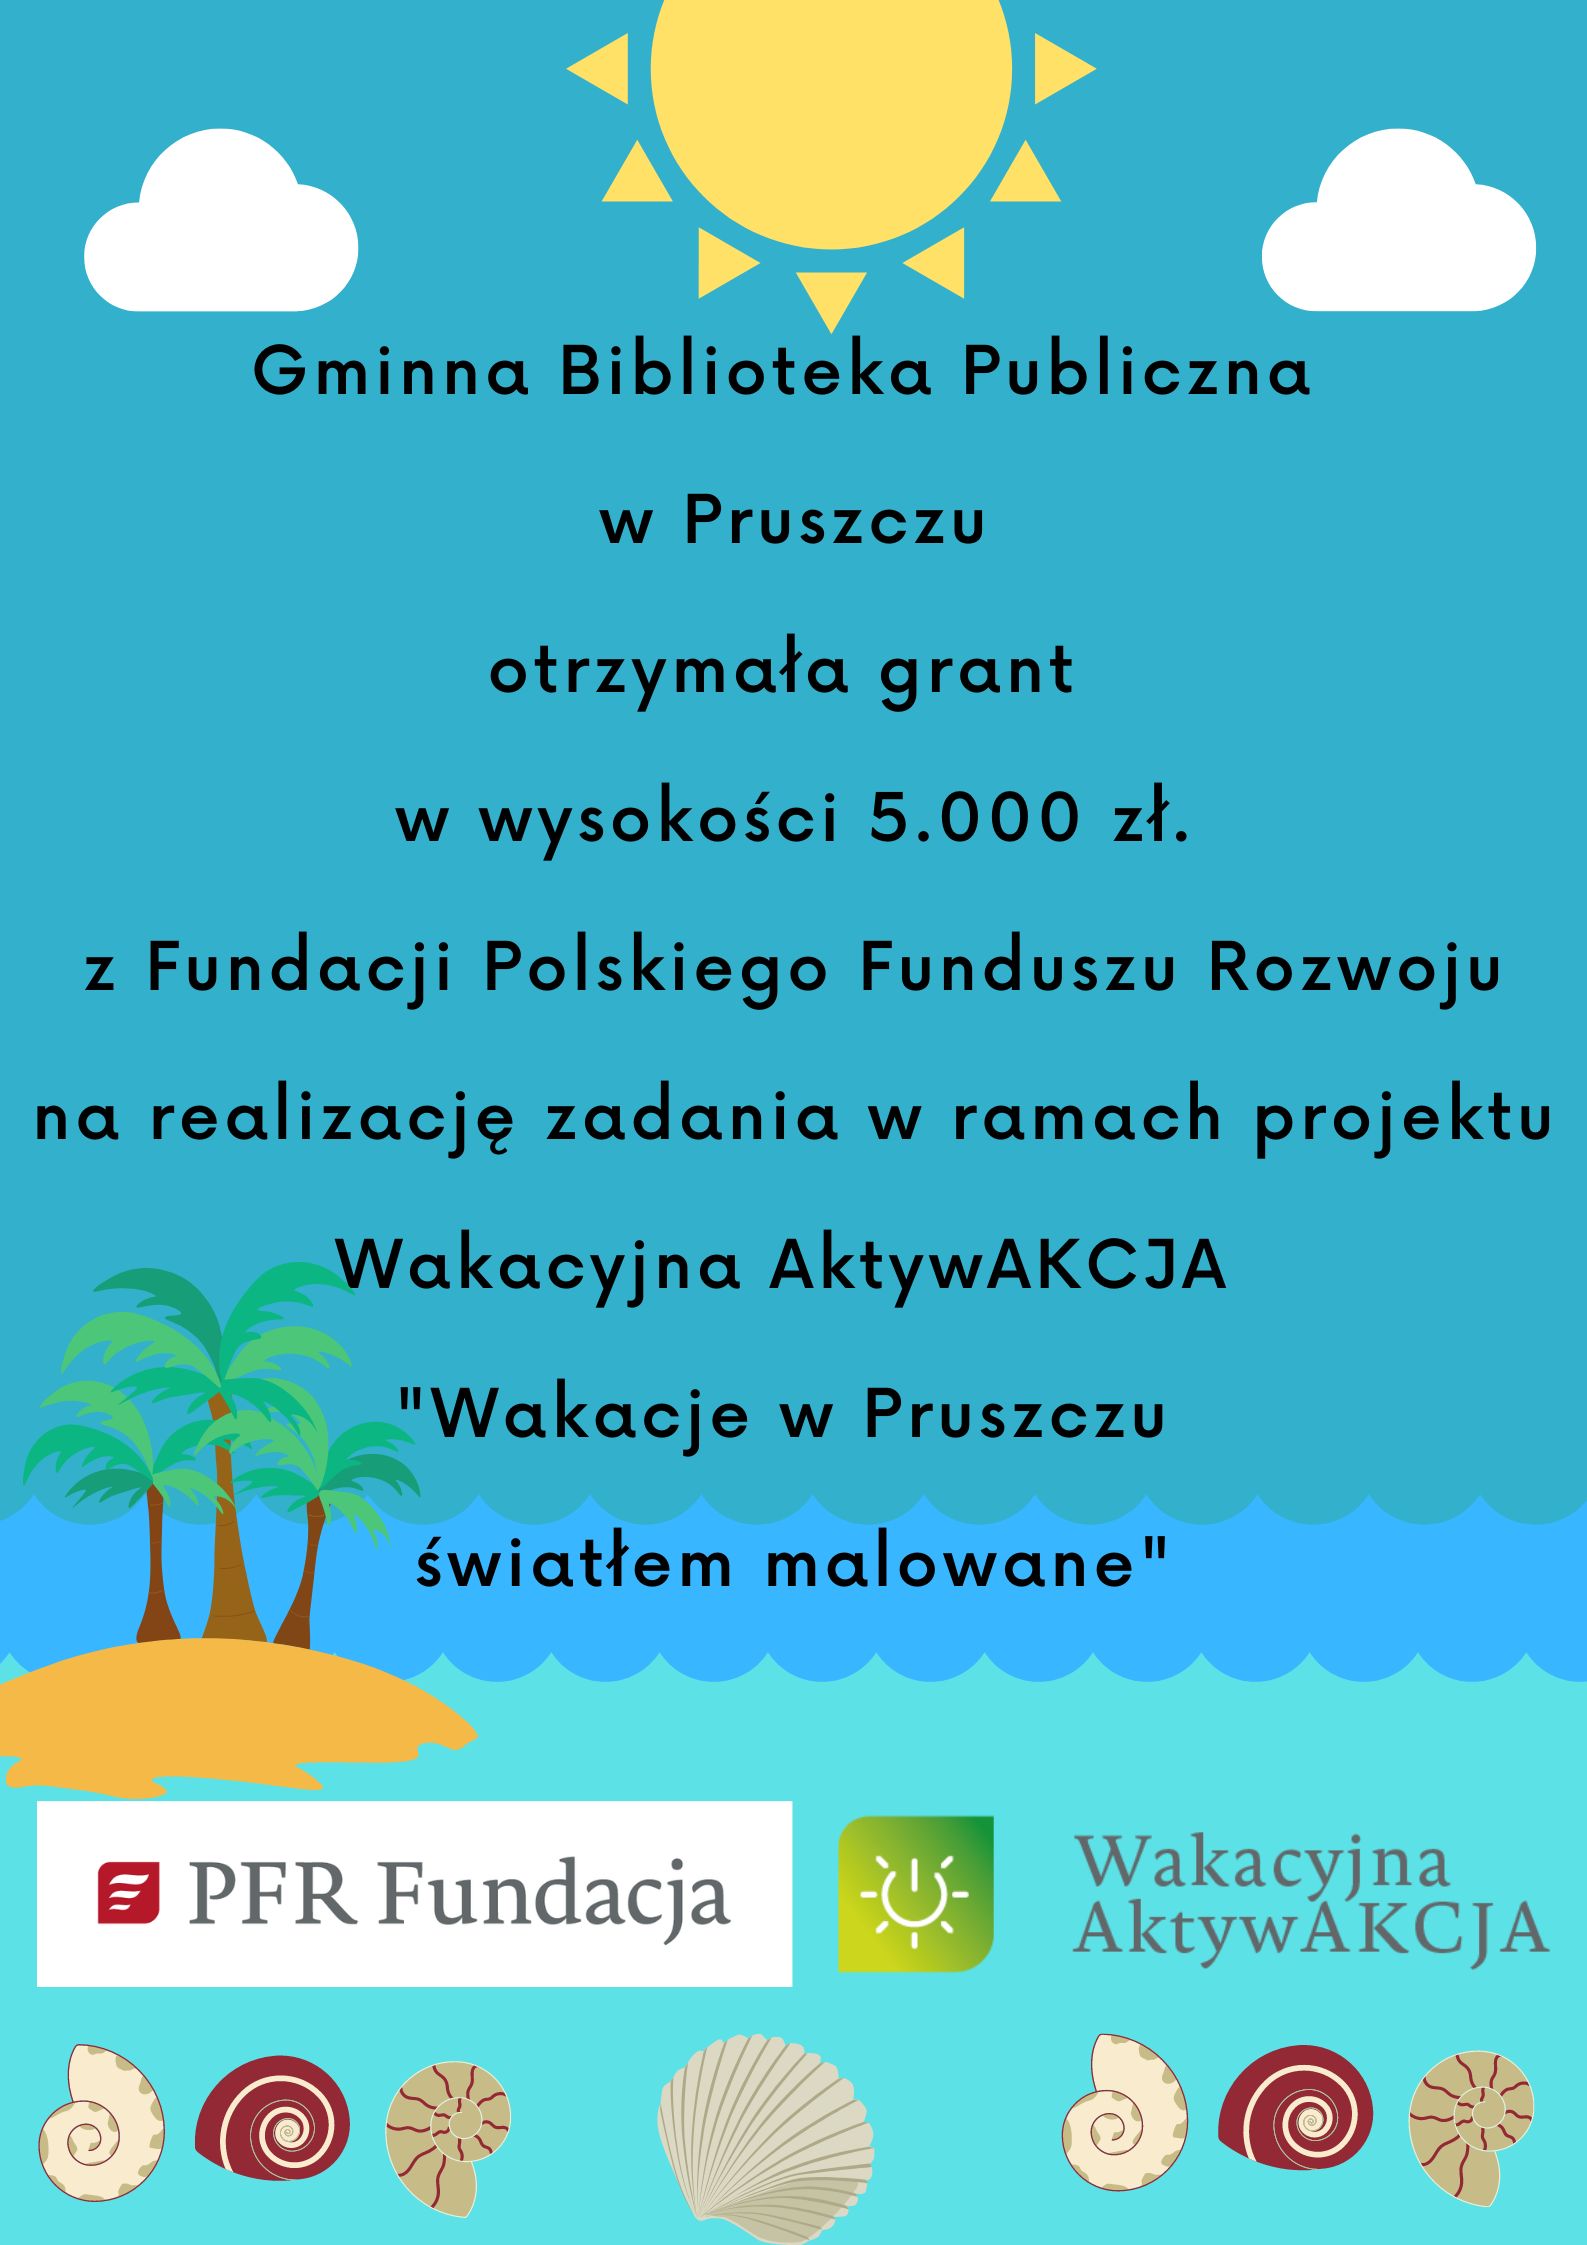 Gminna Biblioteka Publiczna  w Pruszczu otrzymała grant  w wysokości 5.000 zł. z Fundacji Polskiego Funduszu Rozwoju na realizację zadania w ramach projektu Wakacyjna AktywAKCJA  "Wakacje w Pruszczu  światłem malowane"